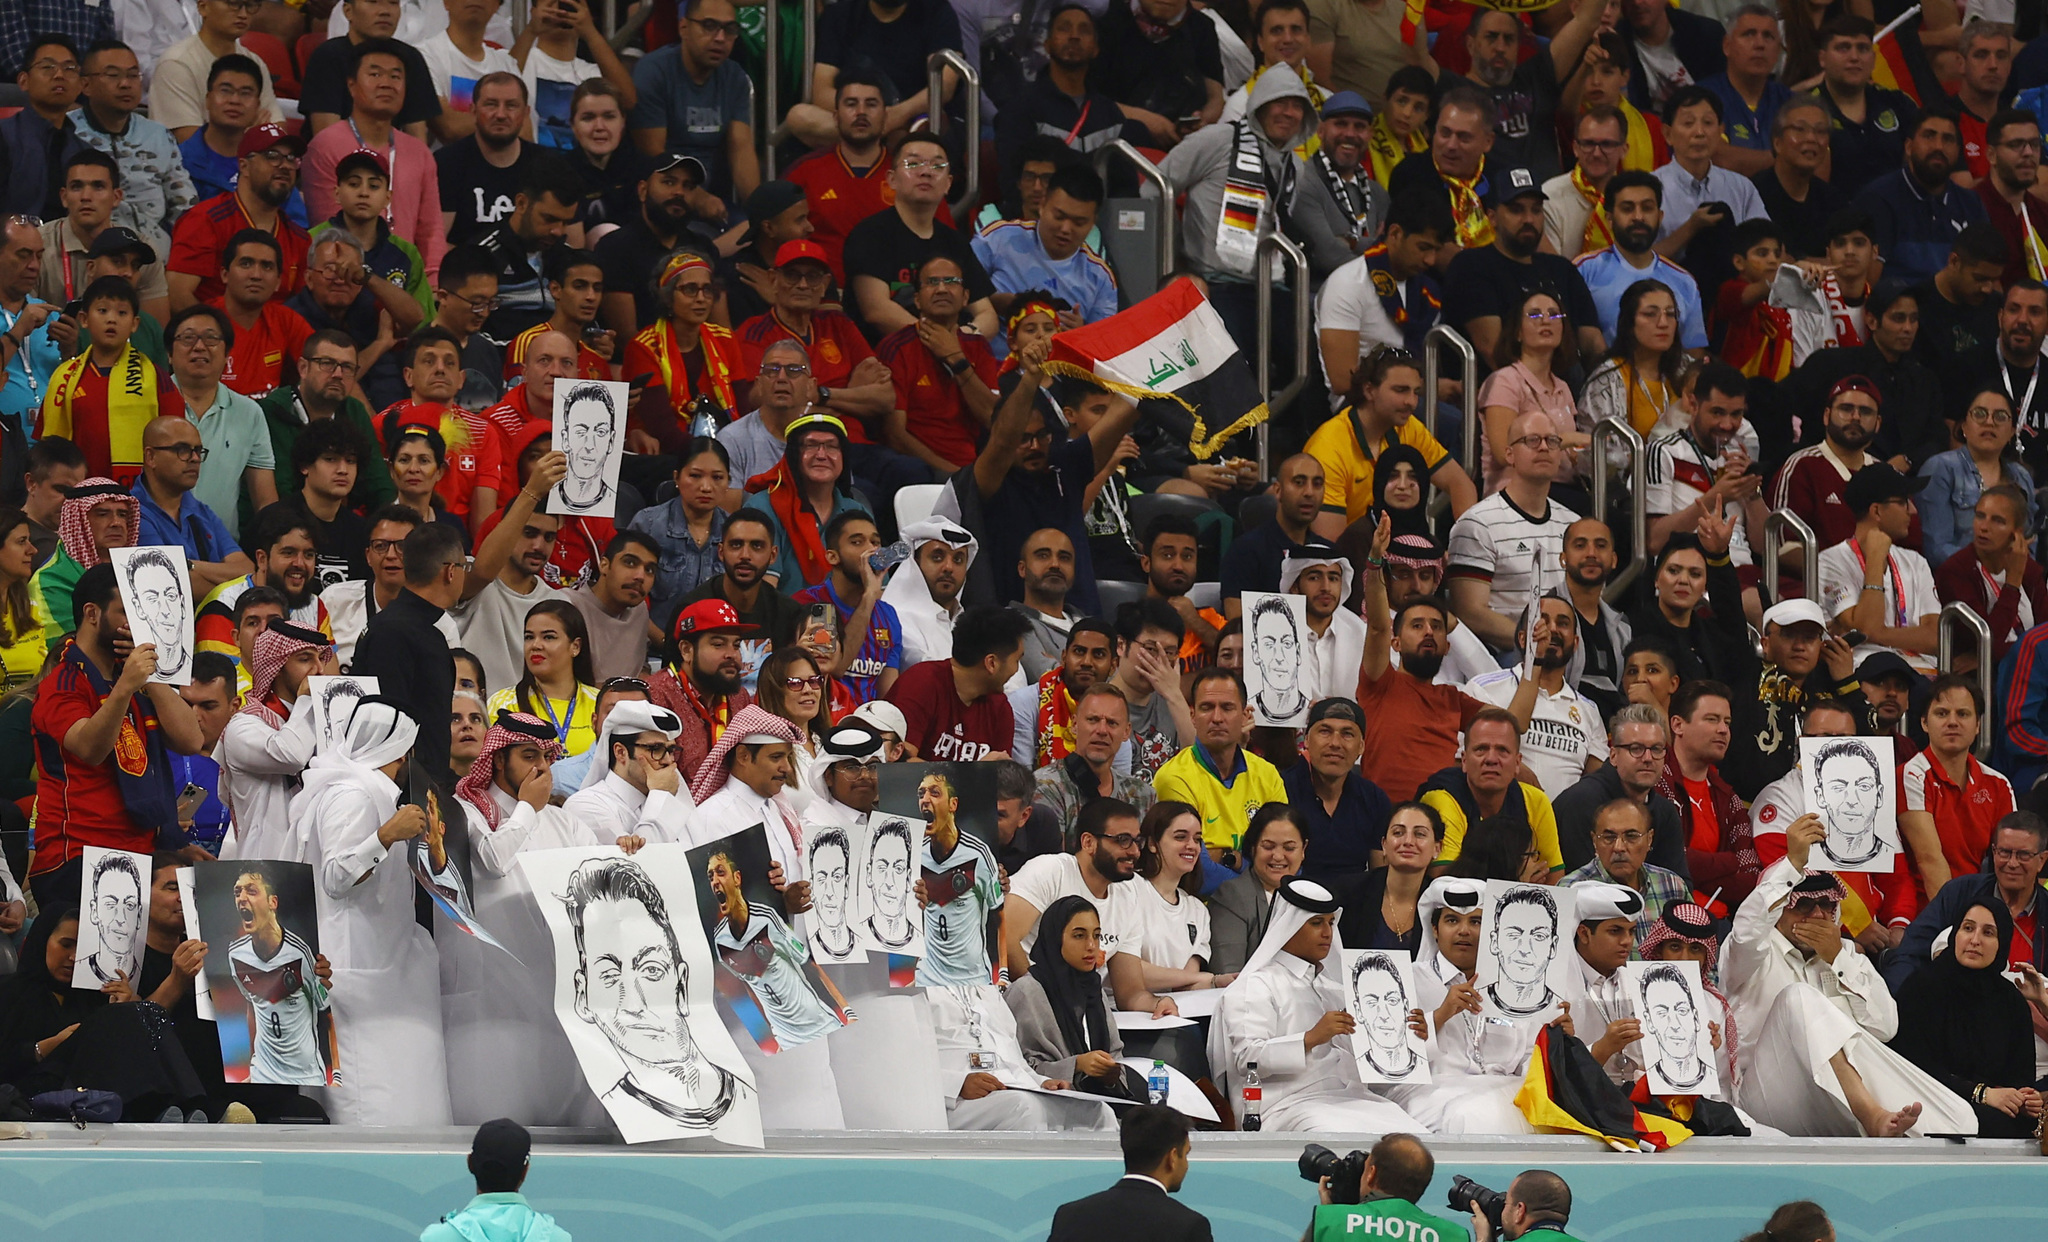 Aficionados qataríes sujetan fotos de Özil durante el Mundial.